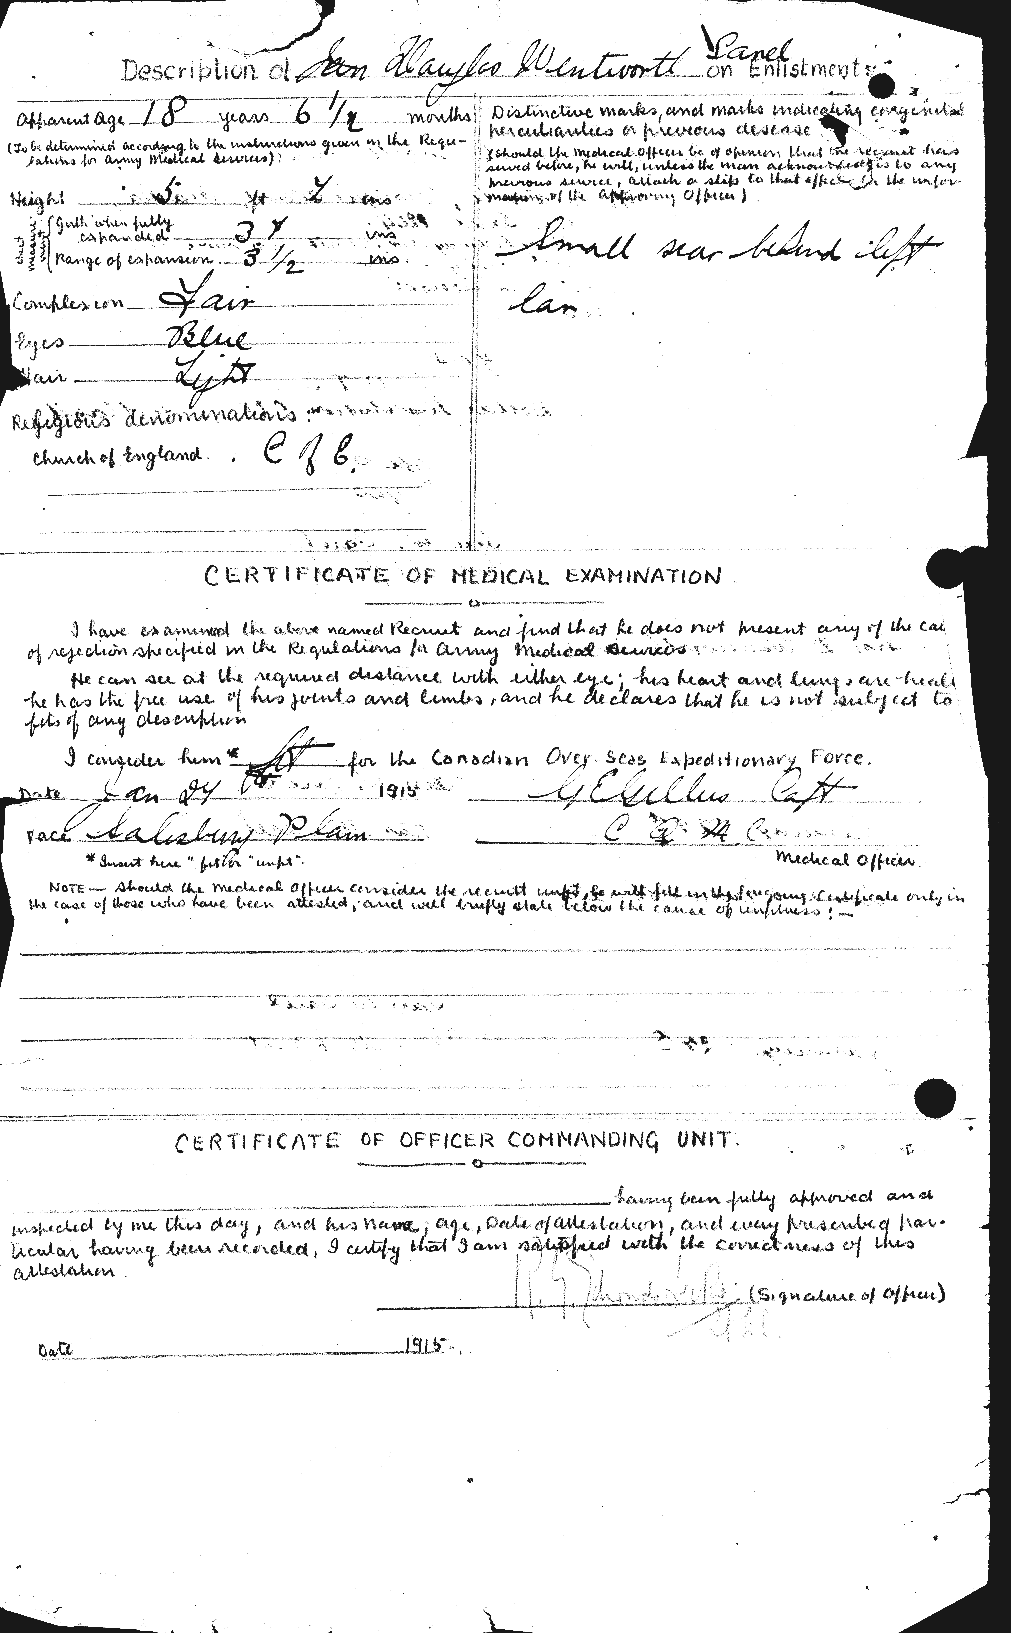 Dossiers du Personnel de la Première Guerre mondiale - CEC 079792b